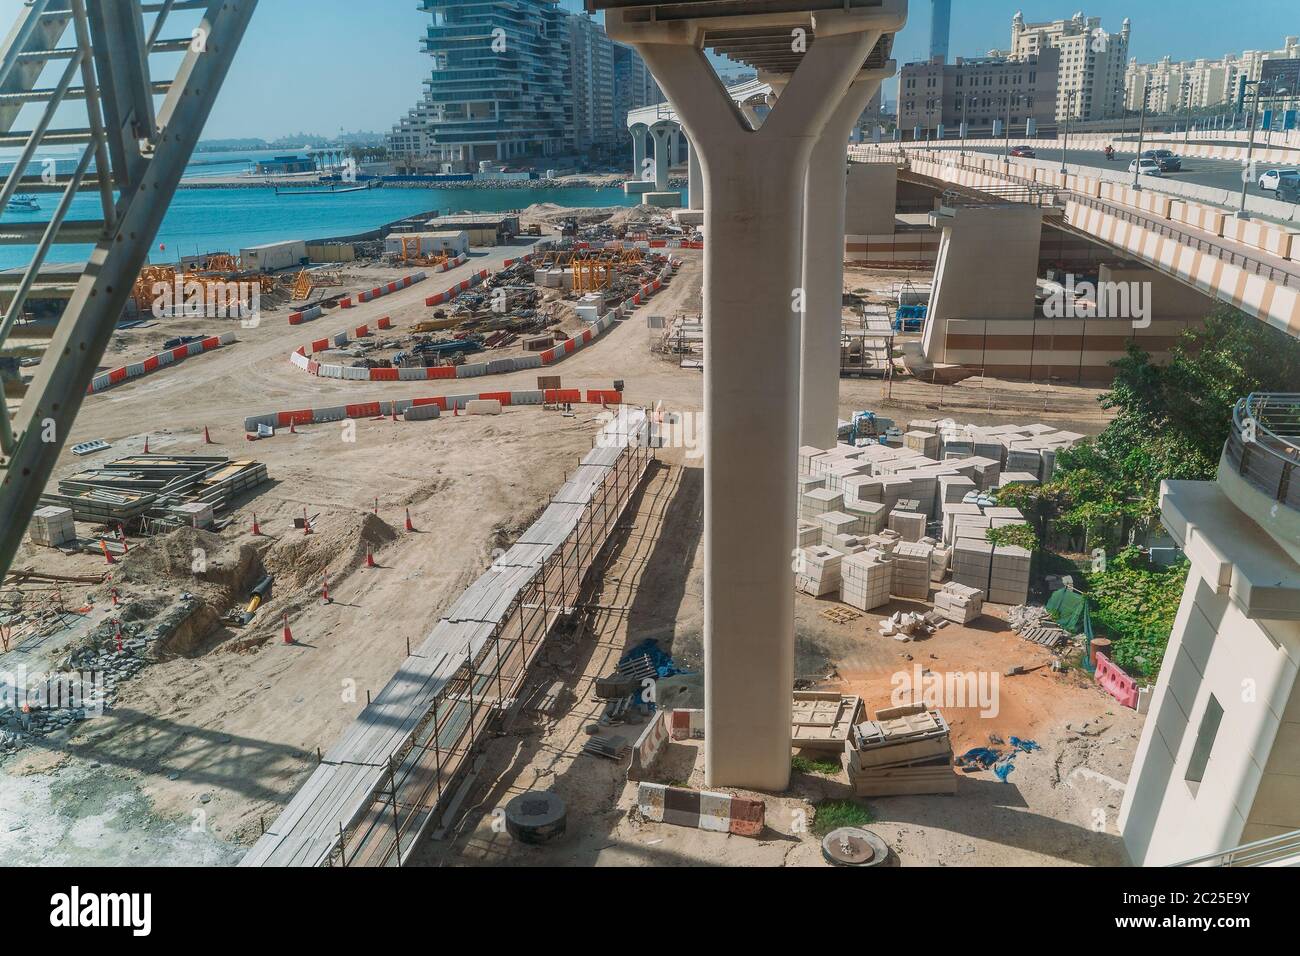 Chantier, nouveaux bâtiments modernes, pont avec monorail, développement rapide à Dubaï. Banque D'Images